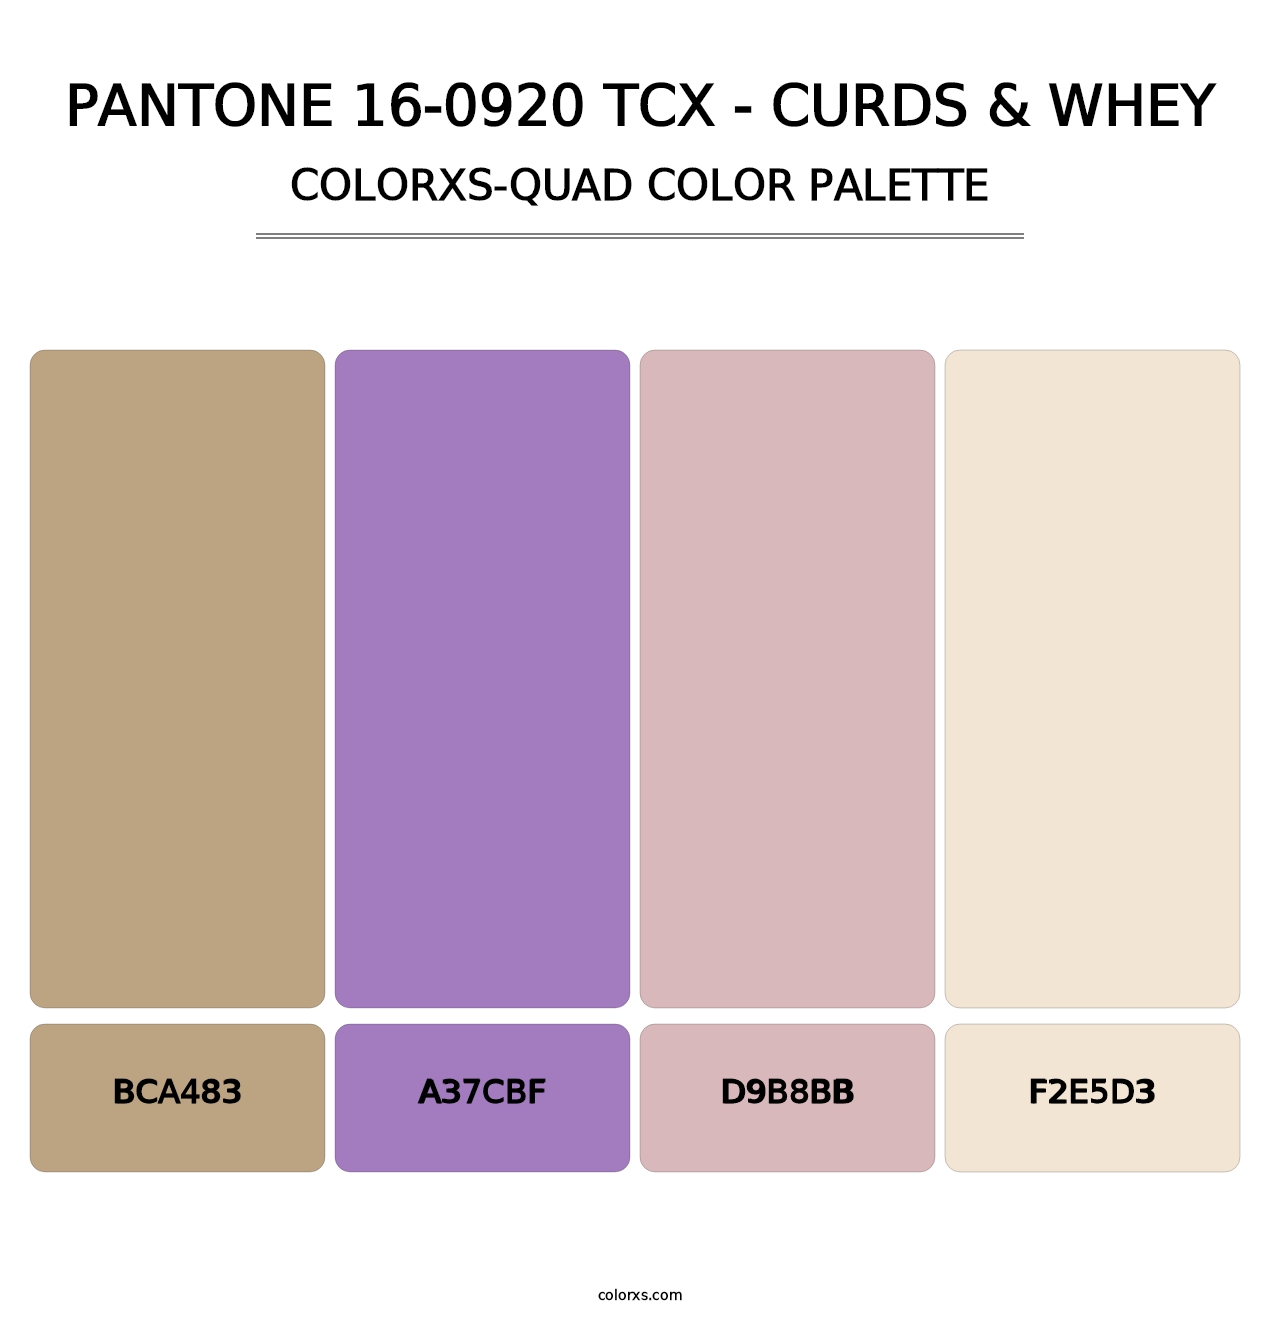 PANTONE 16-0920 TCX - Curds & Whey - Colorxs Quad Palette